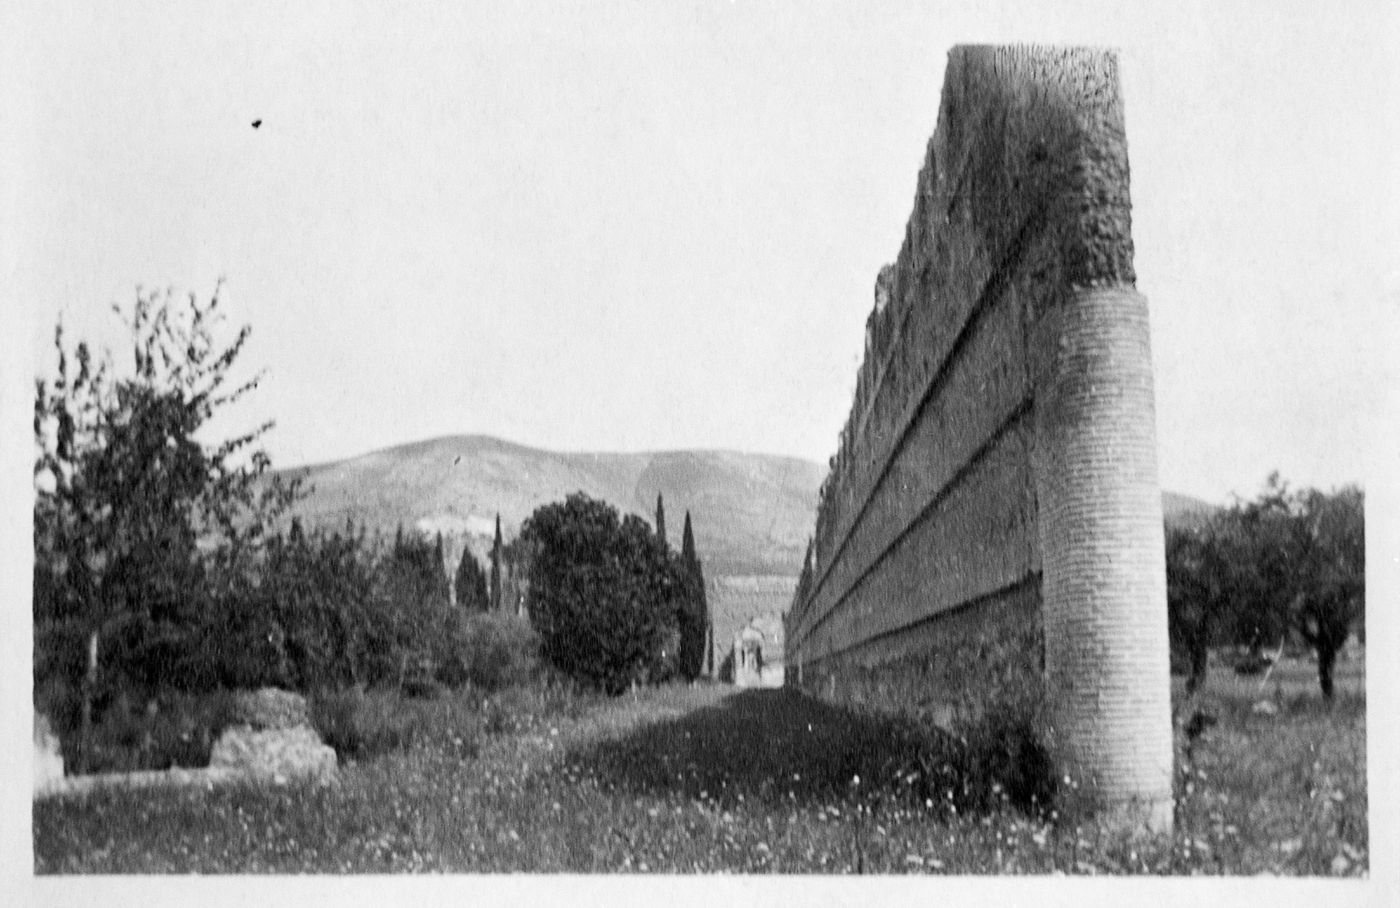 Photograph of an unidentified brick wall, possibly in Villa Adriana, Tivoli, Italy